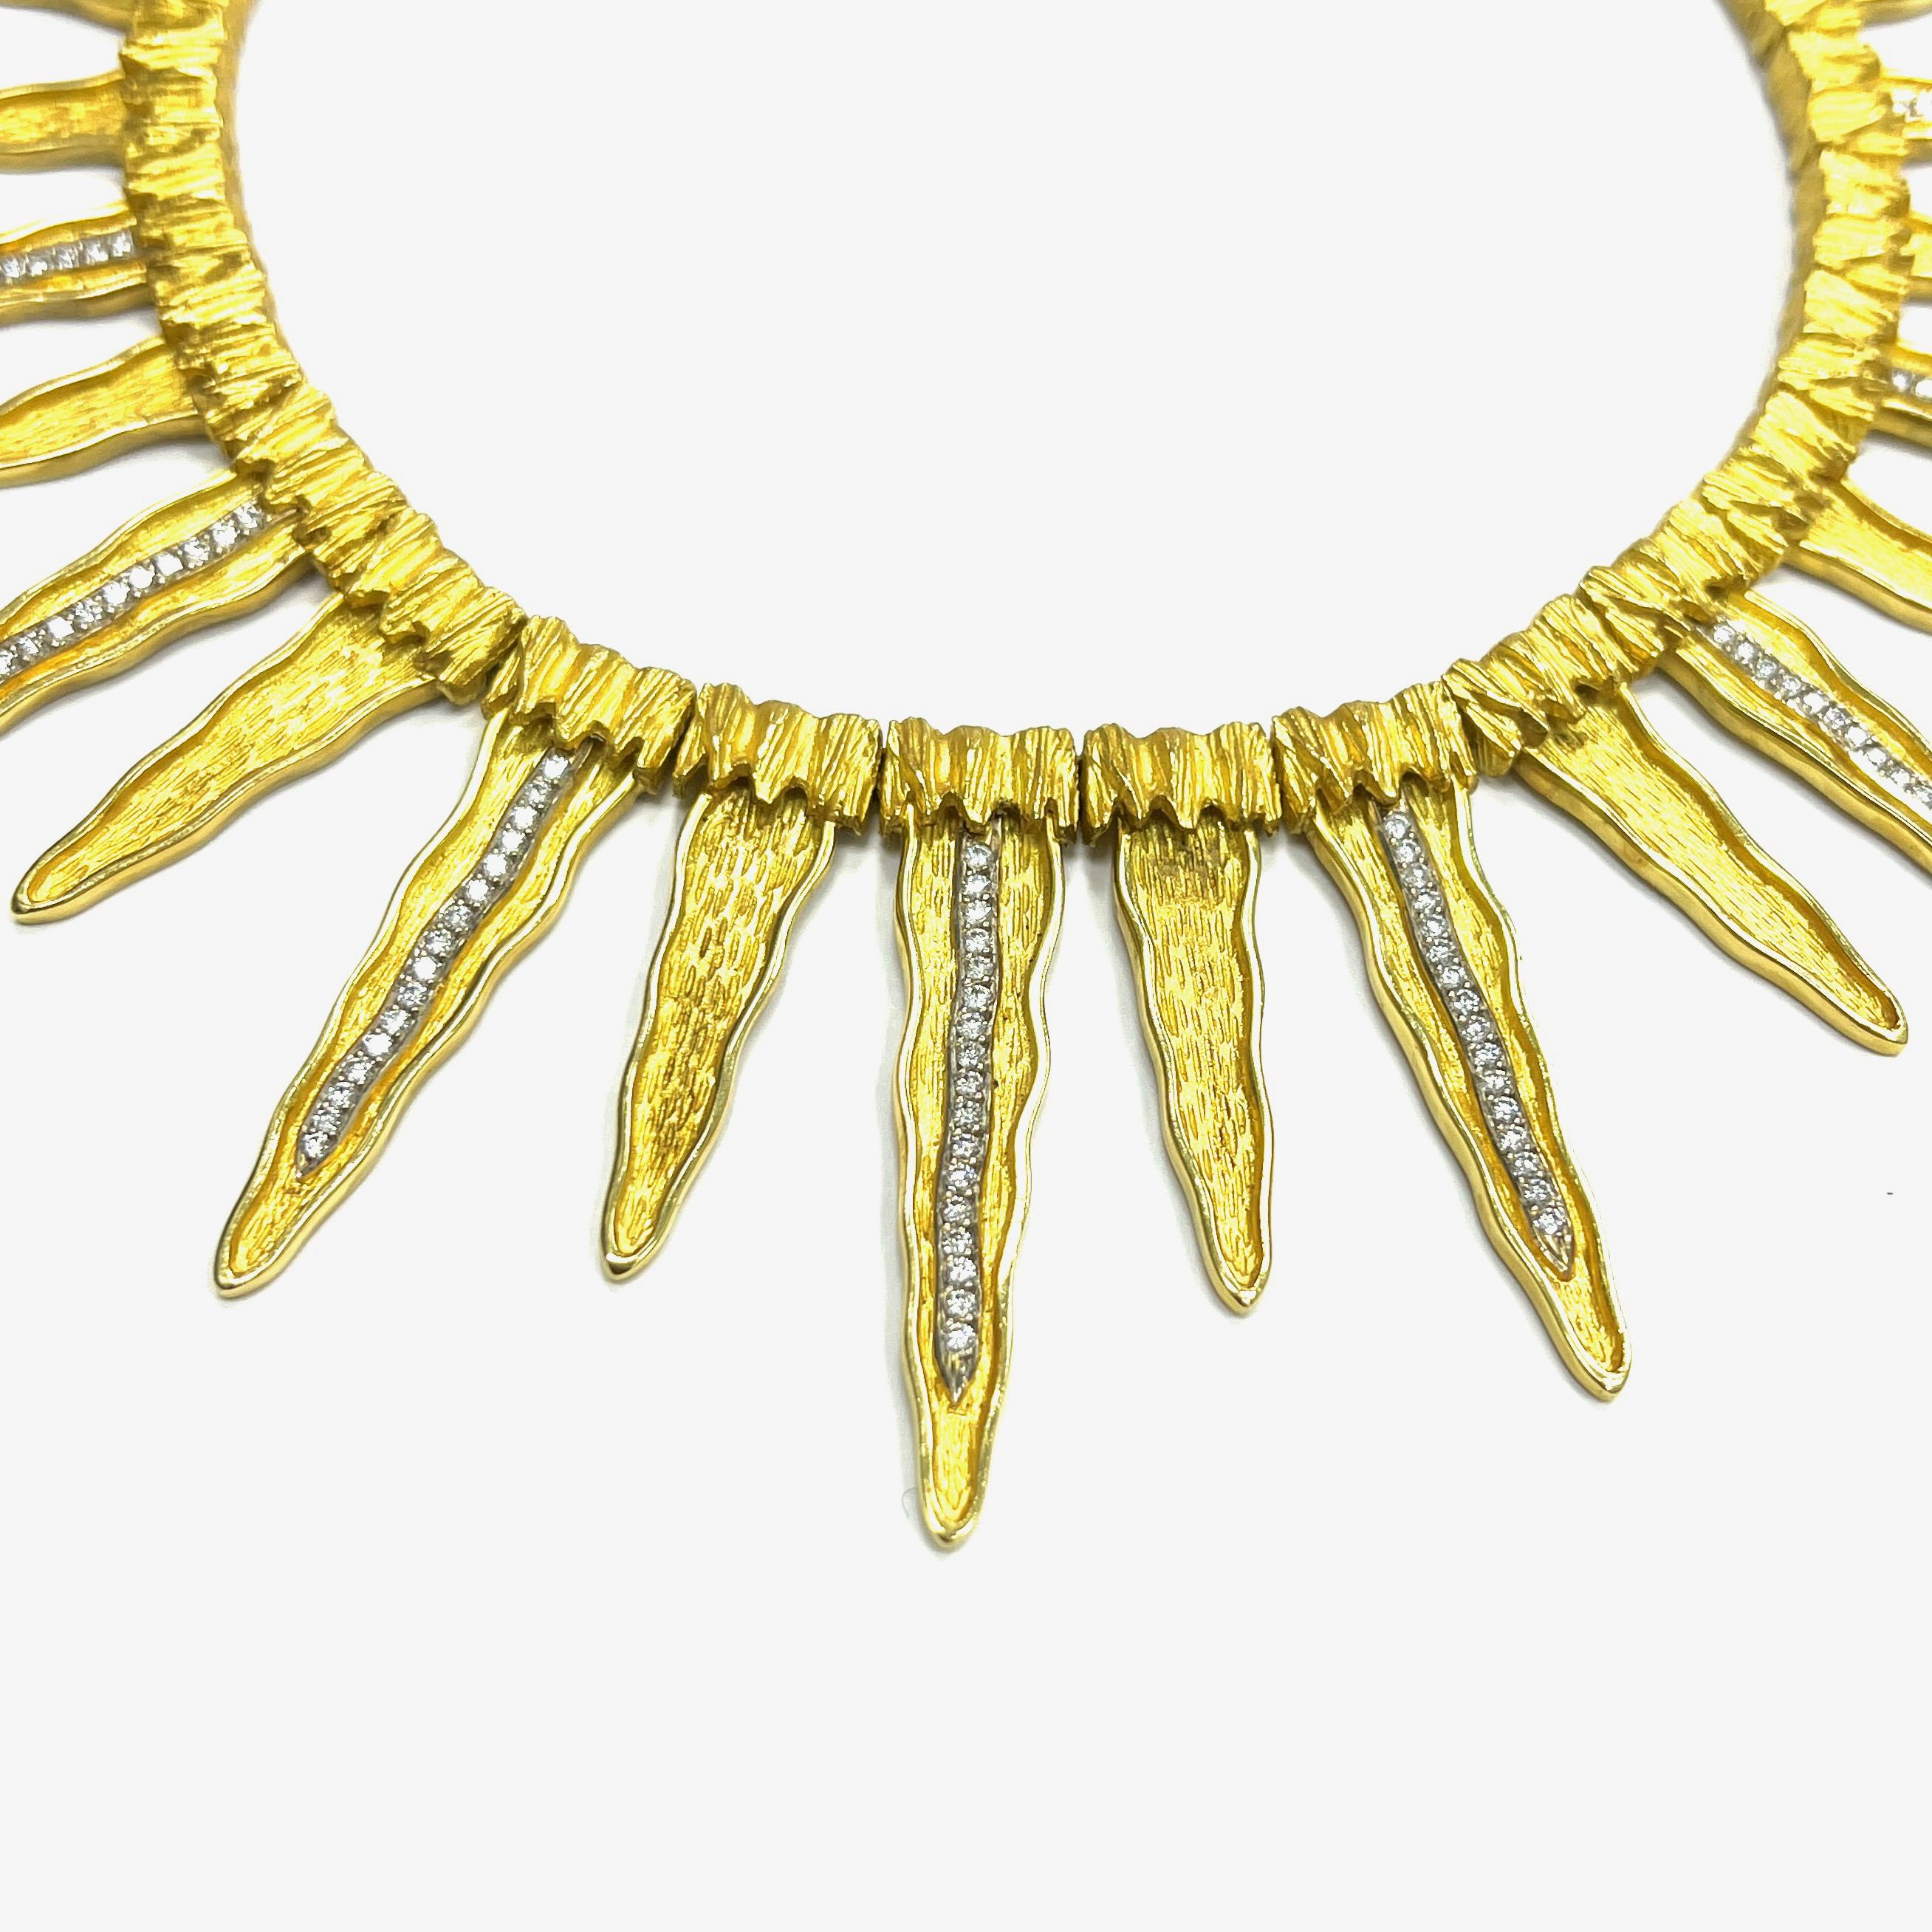 Halskette aus Gelbgold mit Maramenos & Pateras Icicle-Diamant

Einhundertfünf runde Diamanten im Brillantschliff von insgesamt ca. 2,10 Karat, mit Reinheit SI1 und Farbe I; gefasst in 18 Karat Gelbgold; markiert Maramenos & Pateras, 750

Größe: